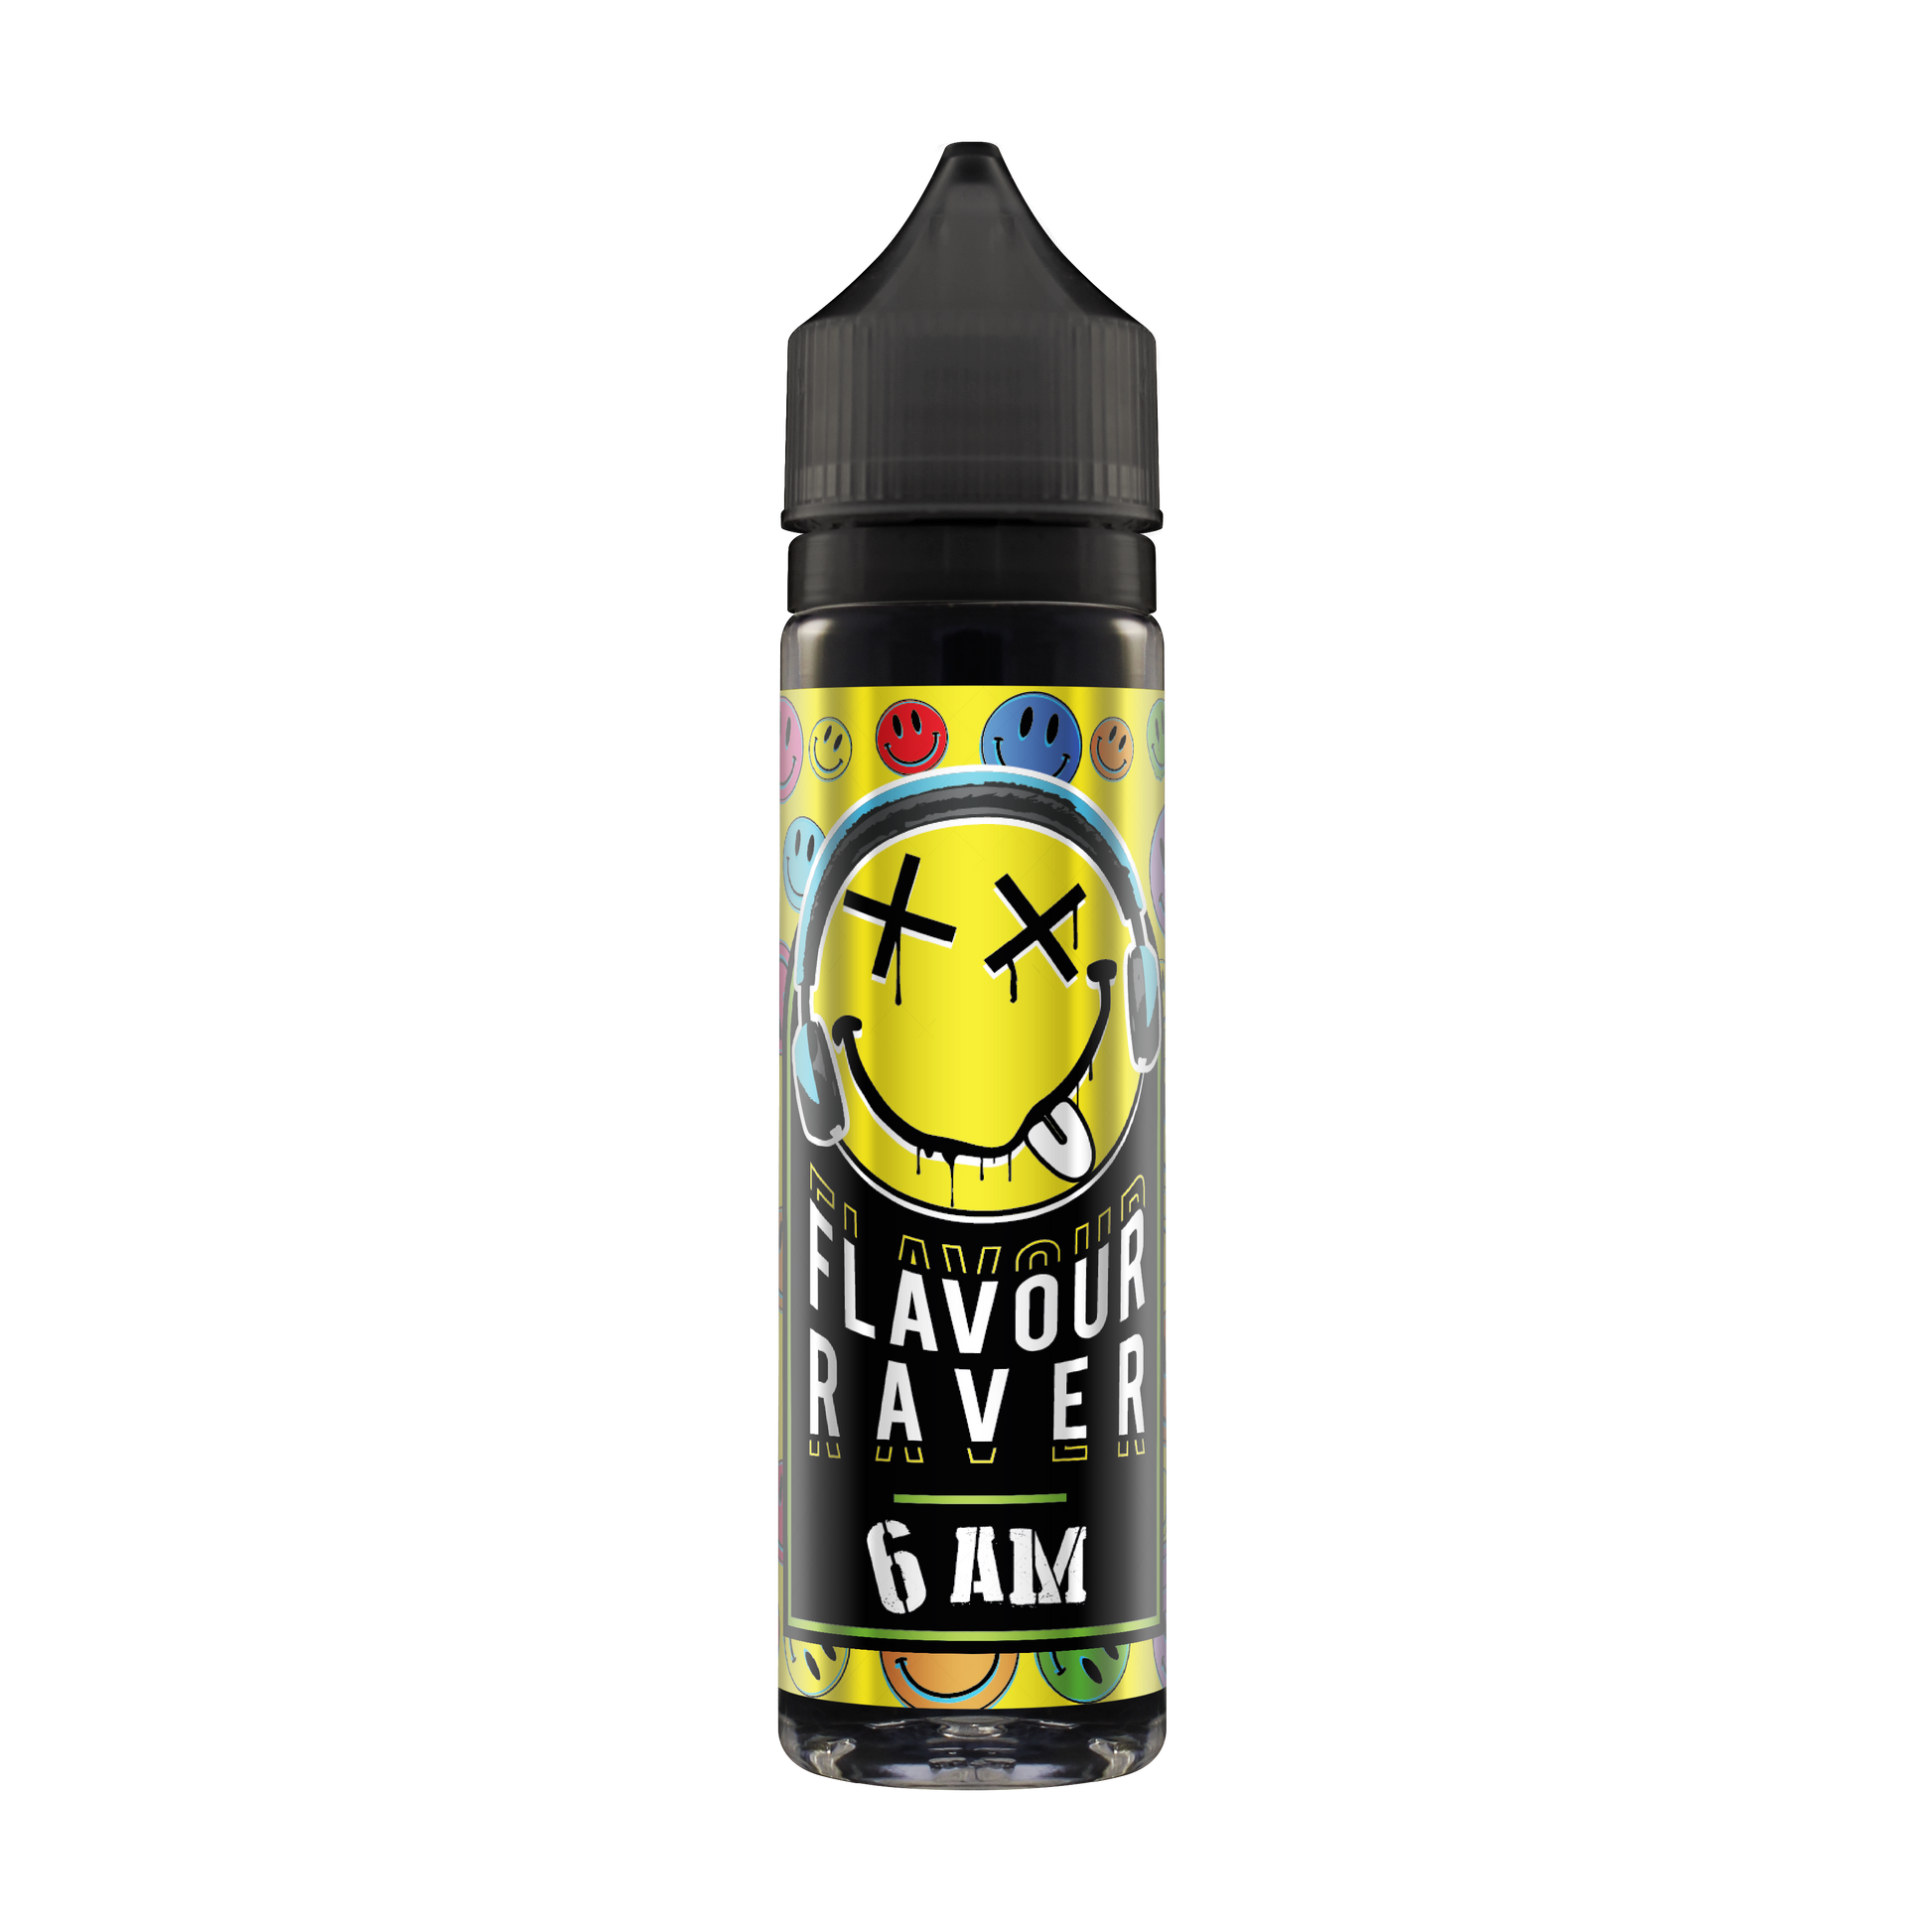 Flavour Raver 6AM 50ML Shortfill - The Ace Of Vapez